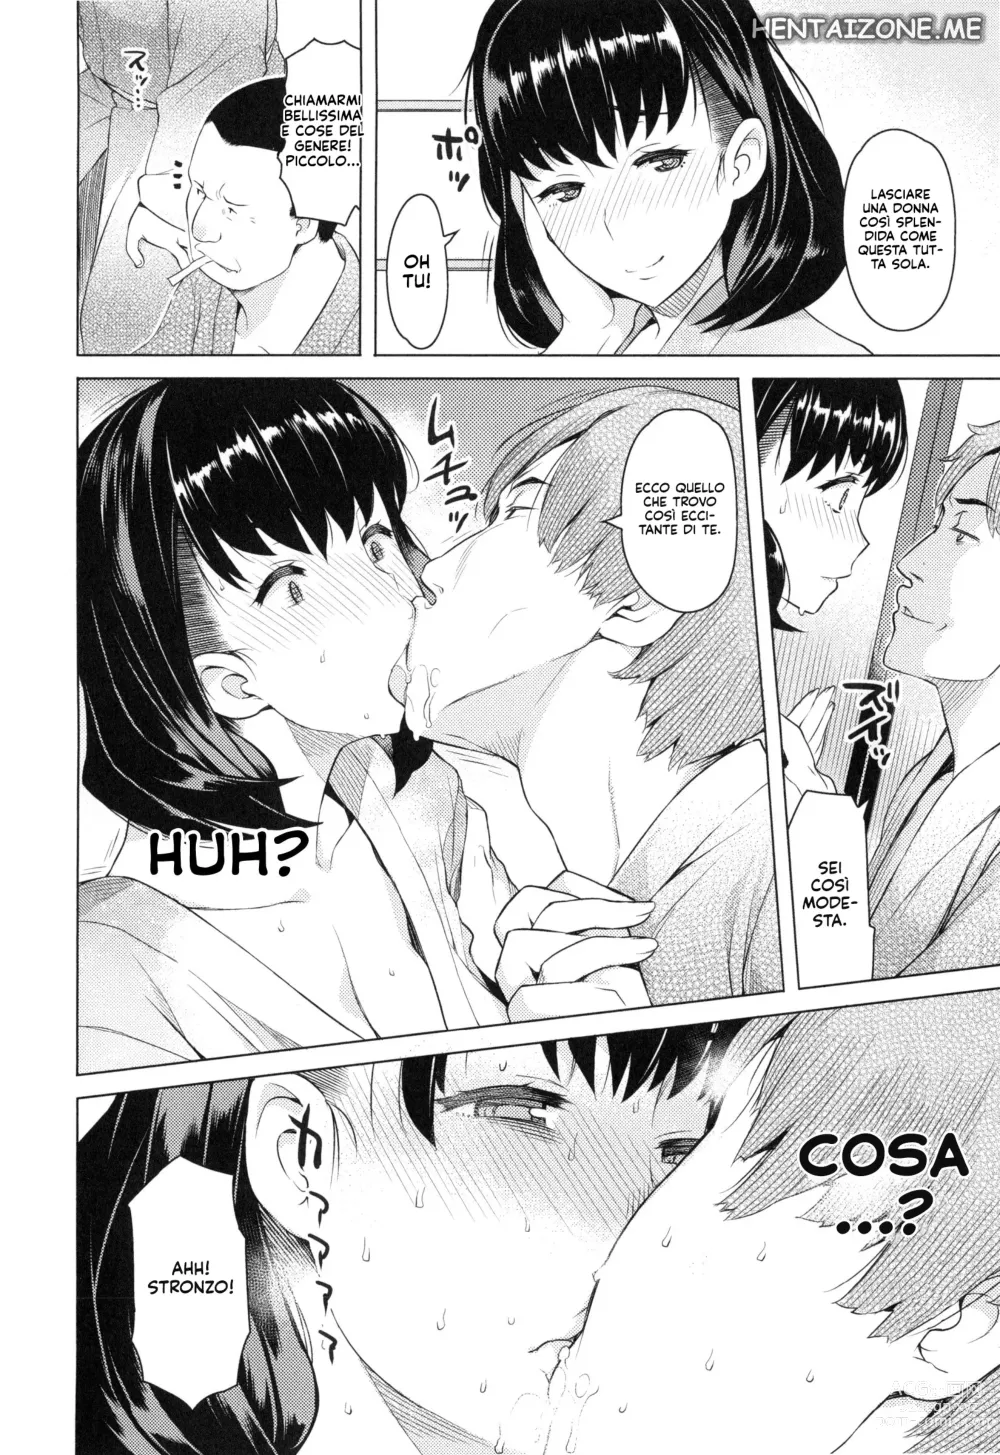 Page 4 of manga Con una Moglie